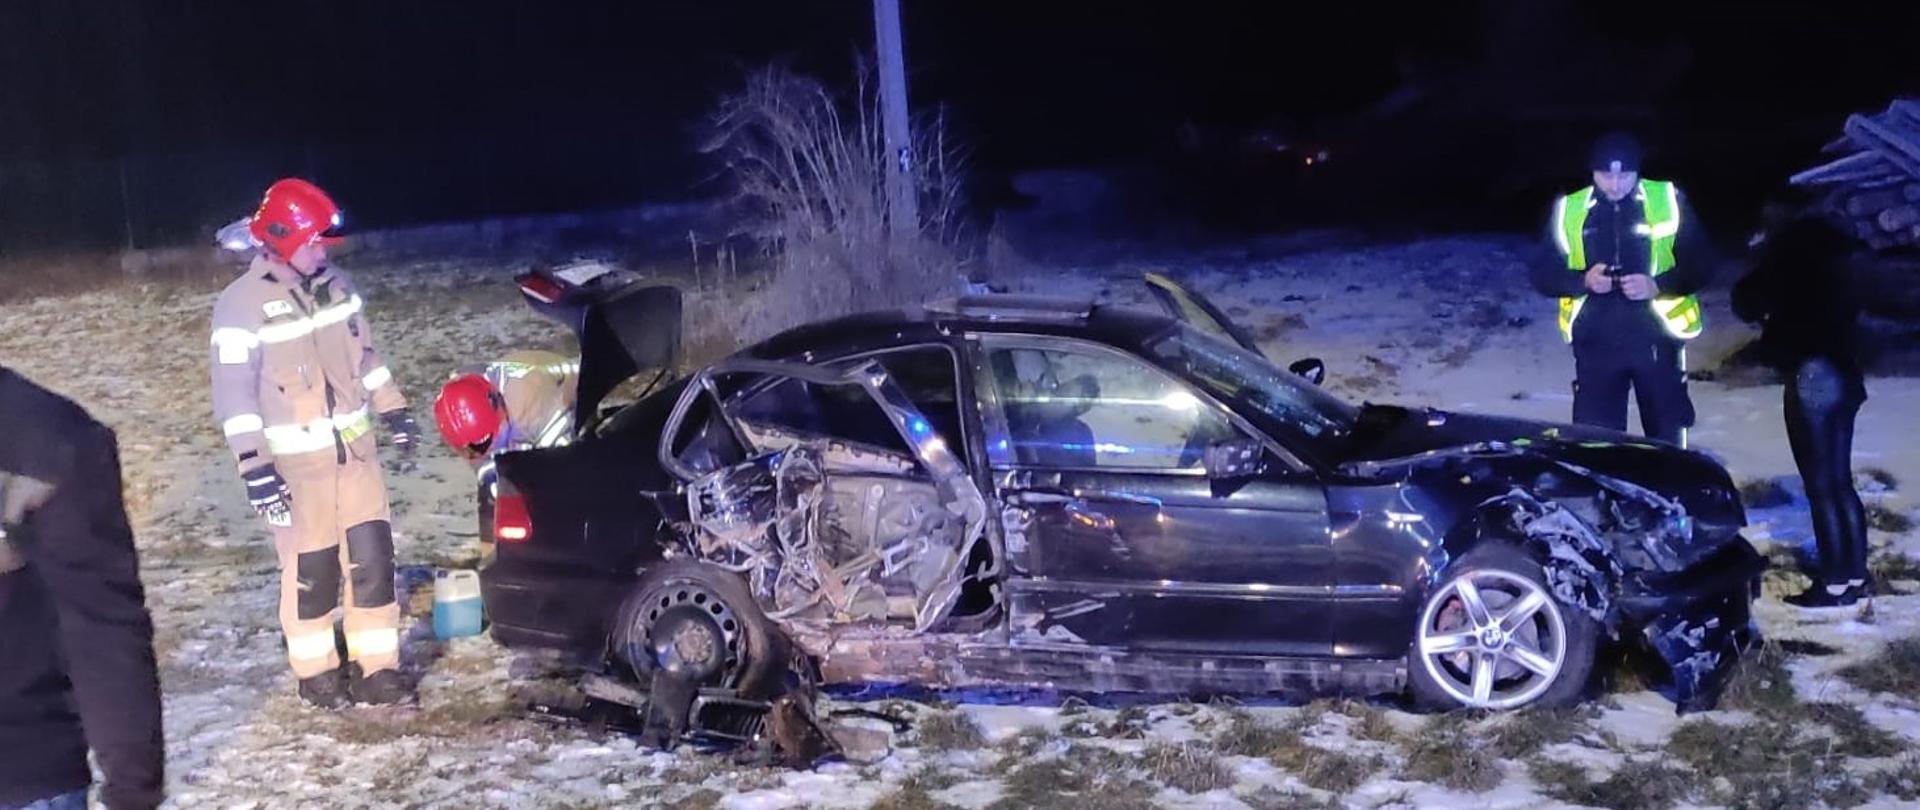 Wypadek samochodu osobowego miejscowość Cudzynowice – ratownicy prowadzący rozpoznanie wokół rozbitego samochodu.